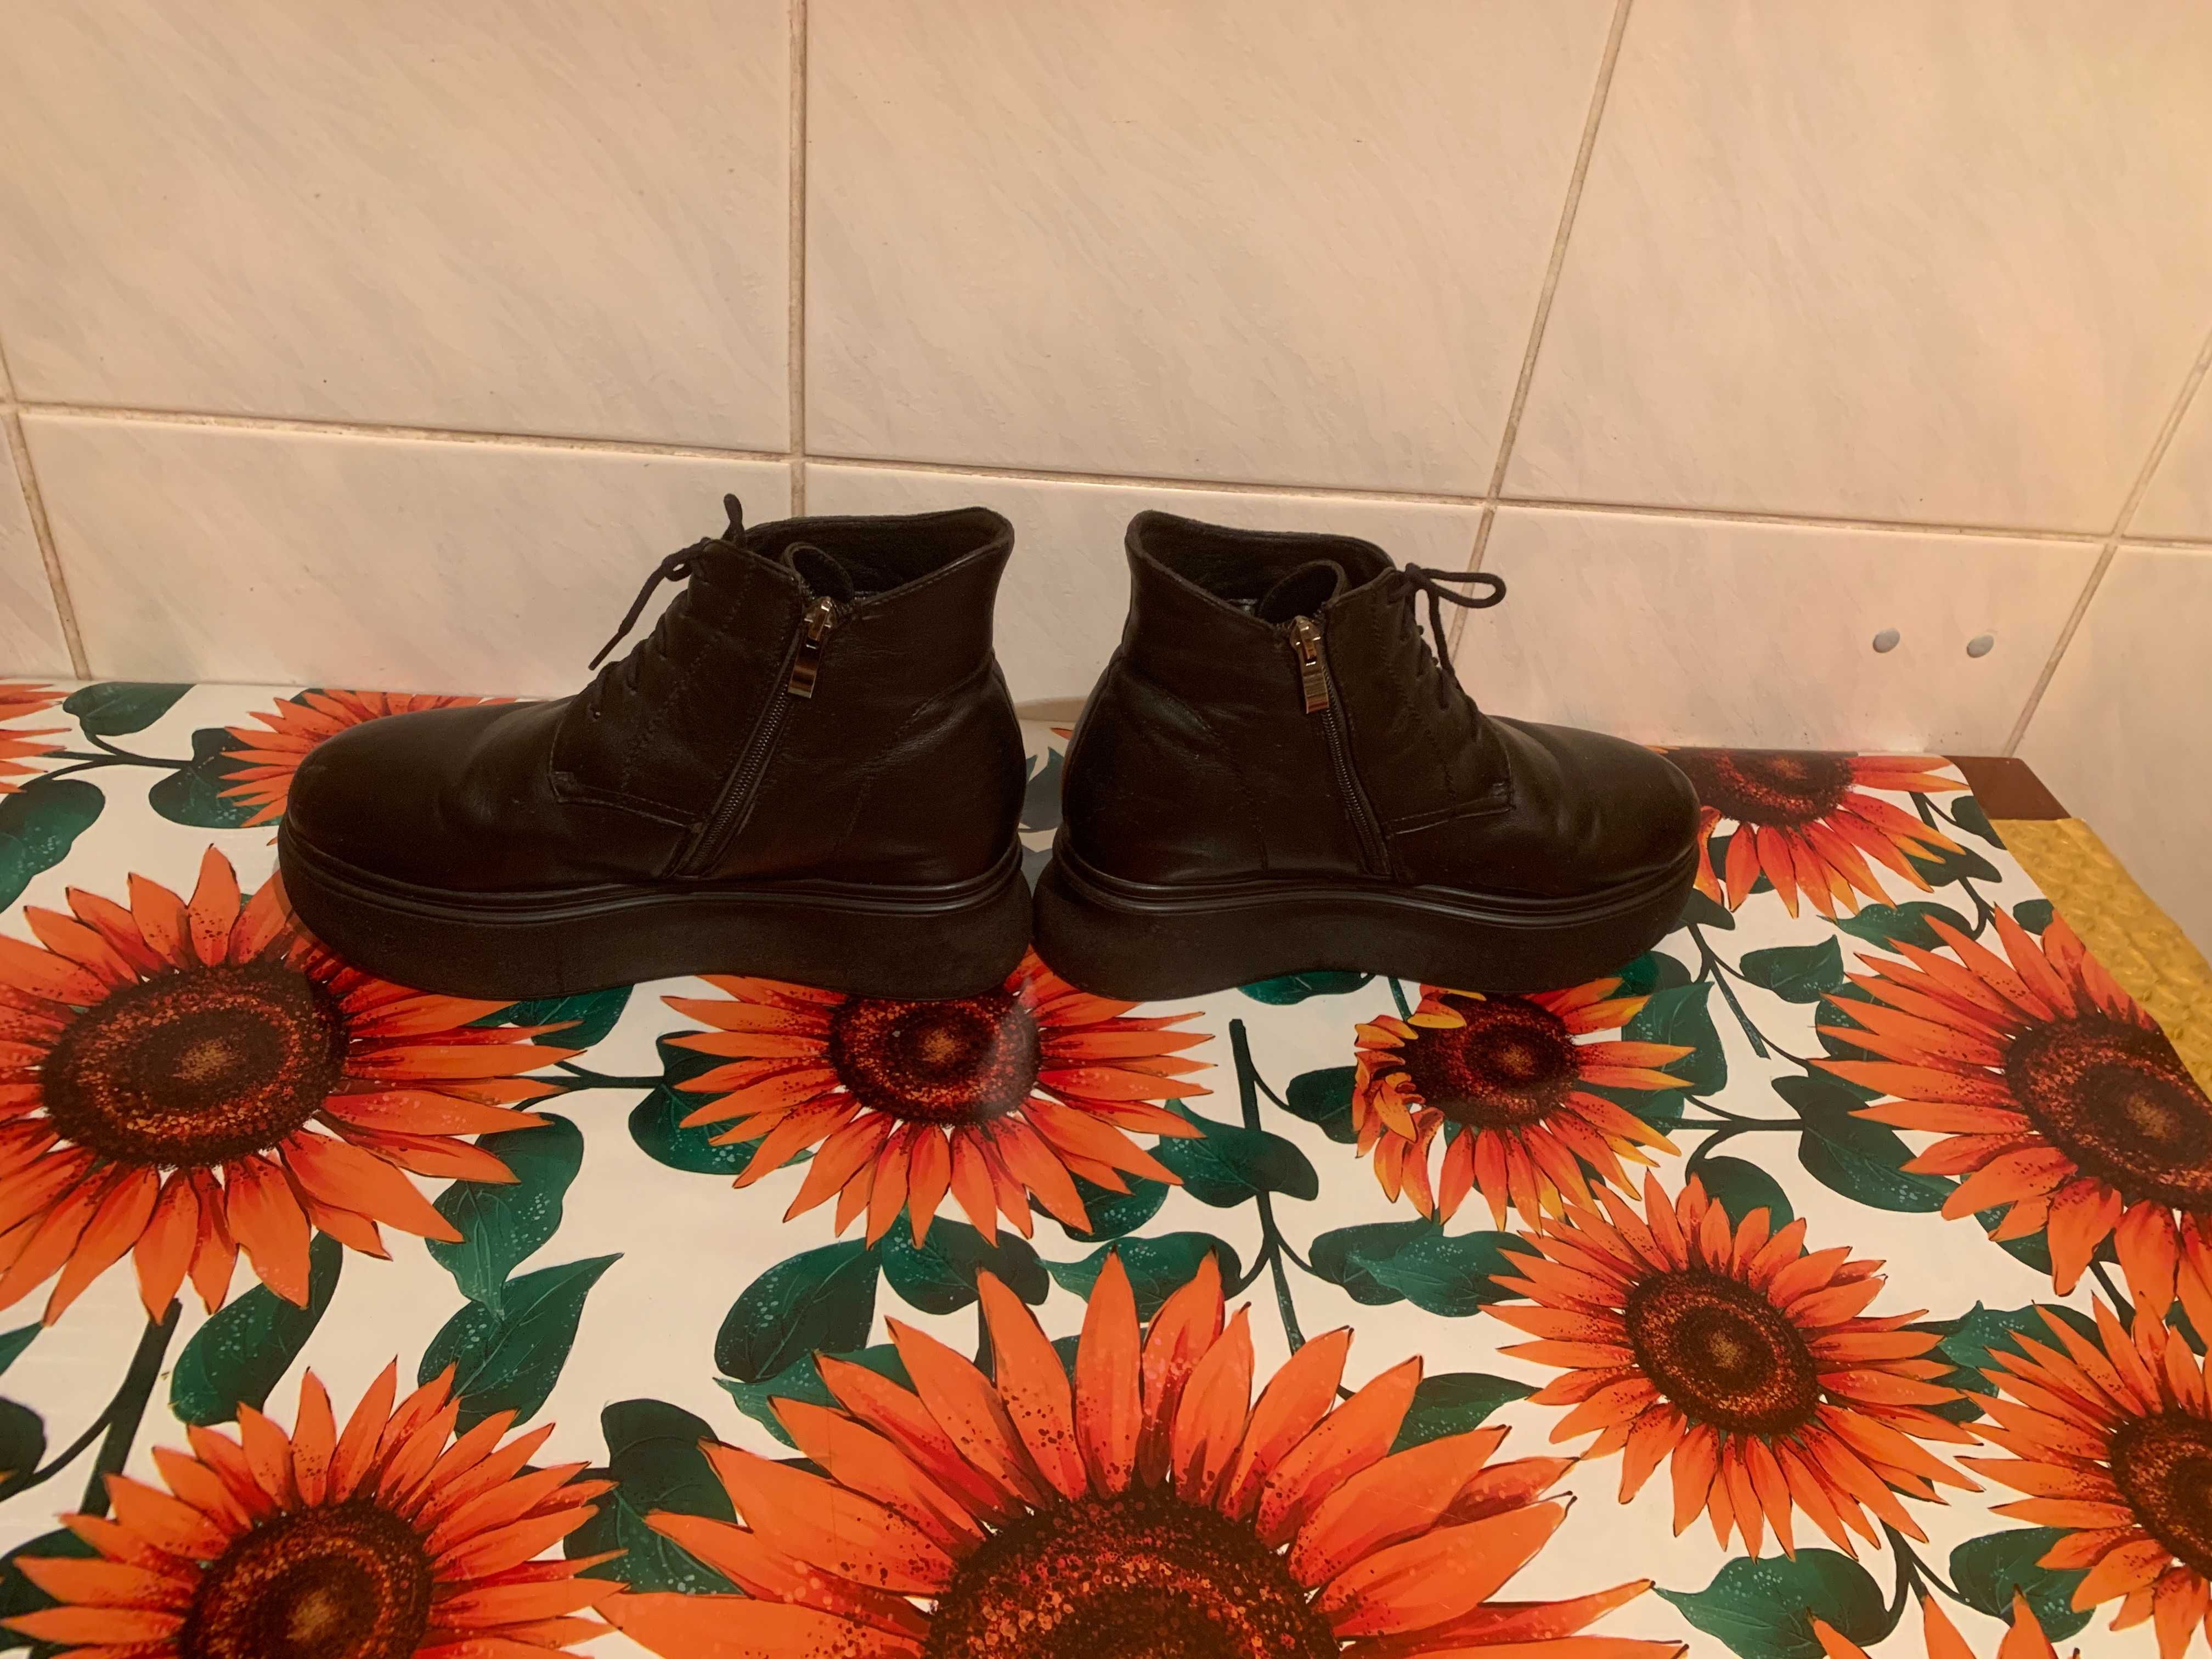 Продам ботинки жен. черн. цвета совр. модел. ряда (сделано в Германии)